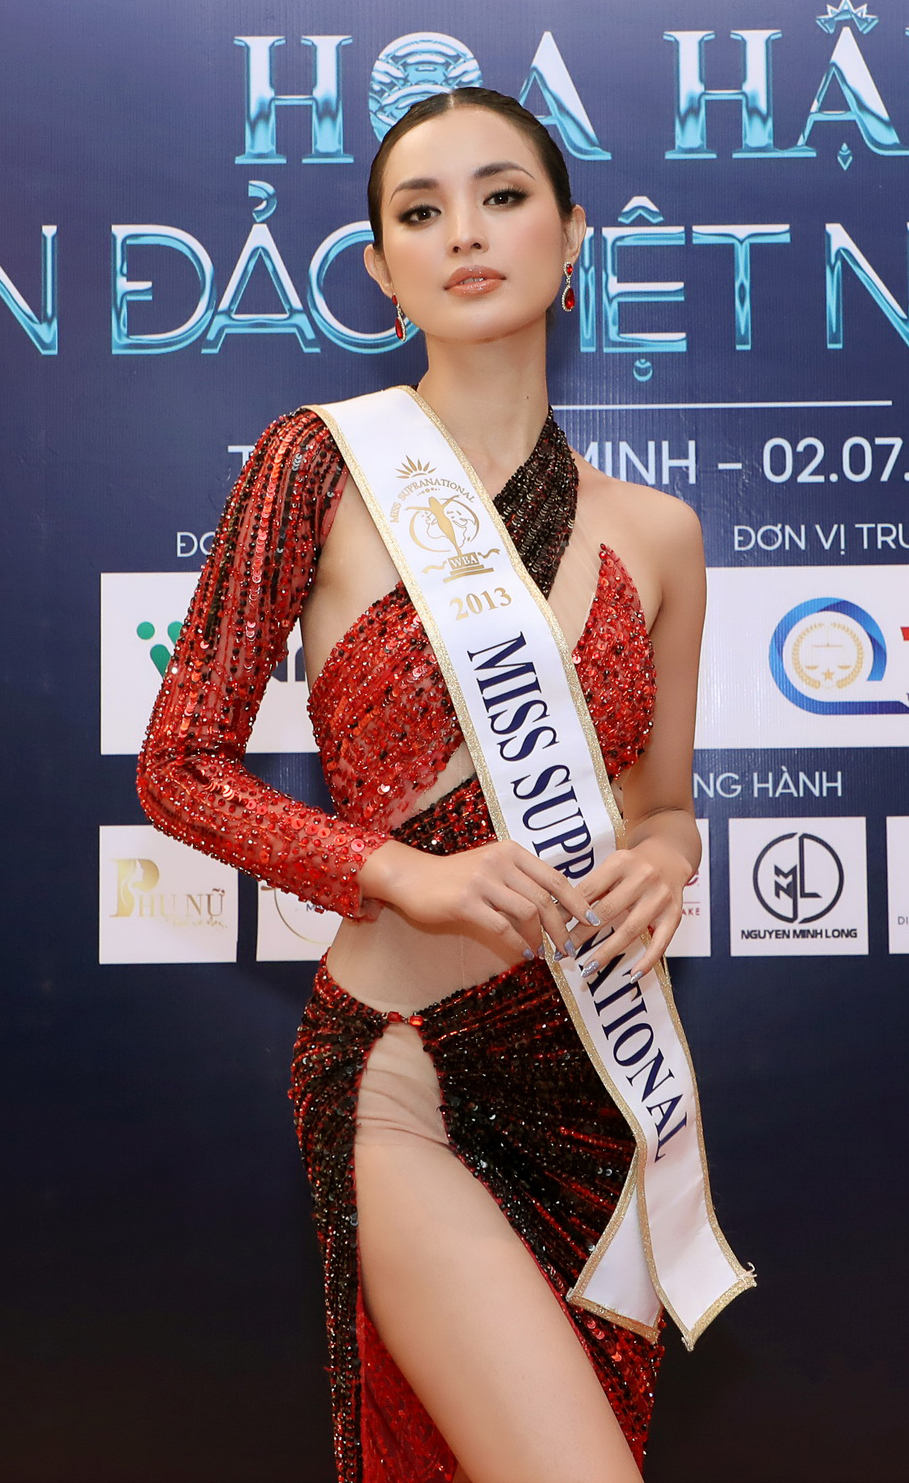 Hoa hậu Siêu quốc gia 2013 nóng bỏng trên thảm đỏ